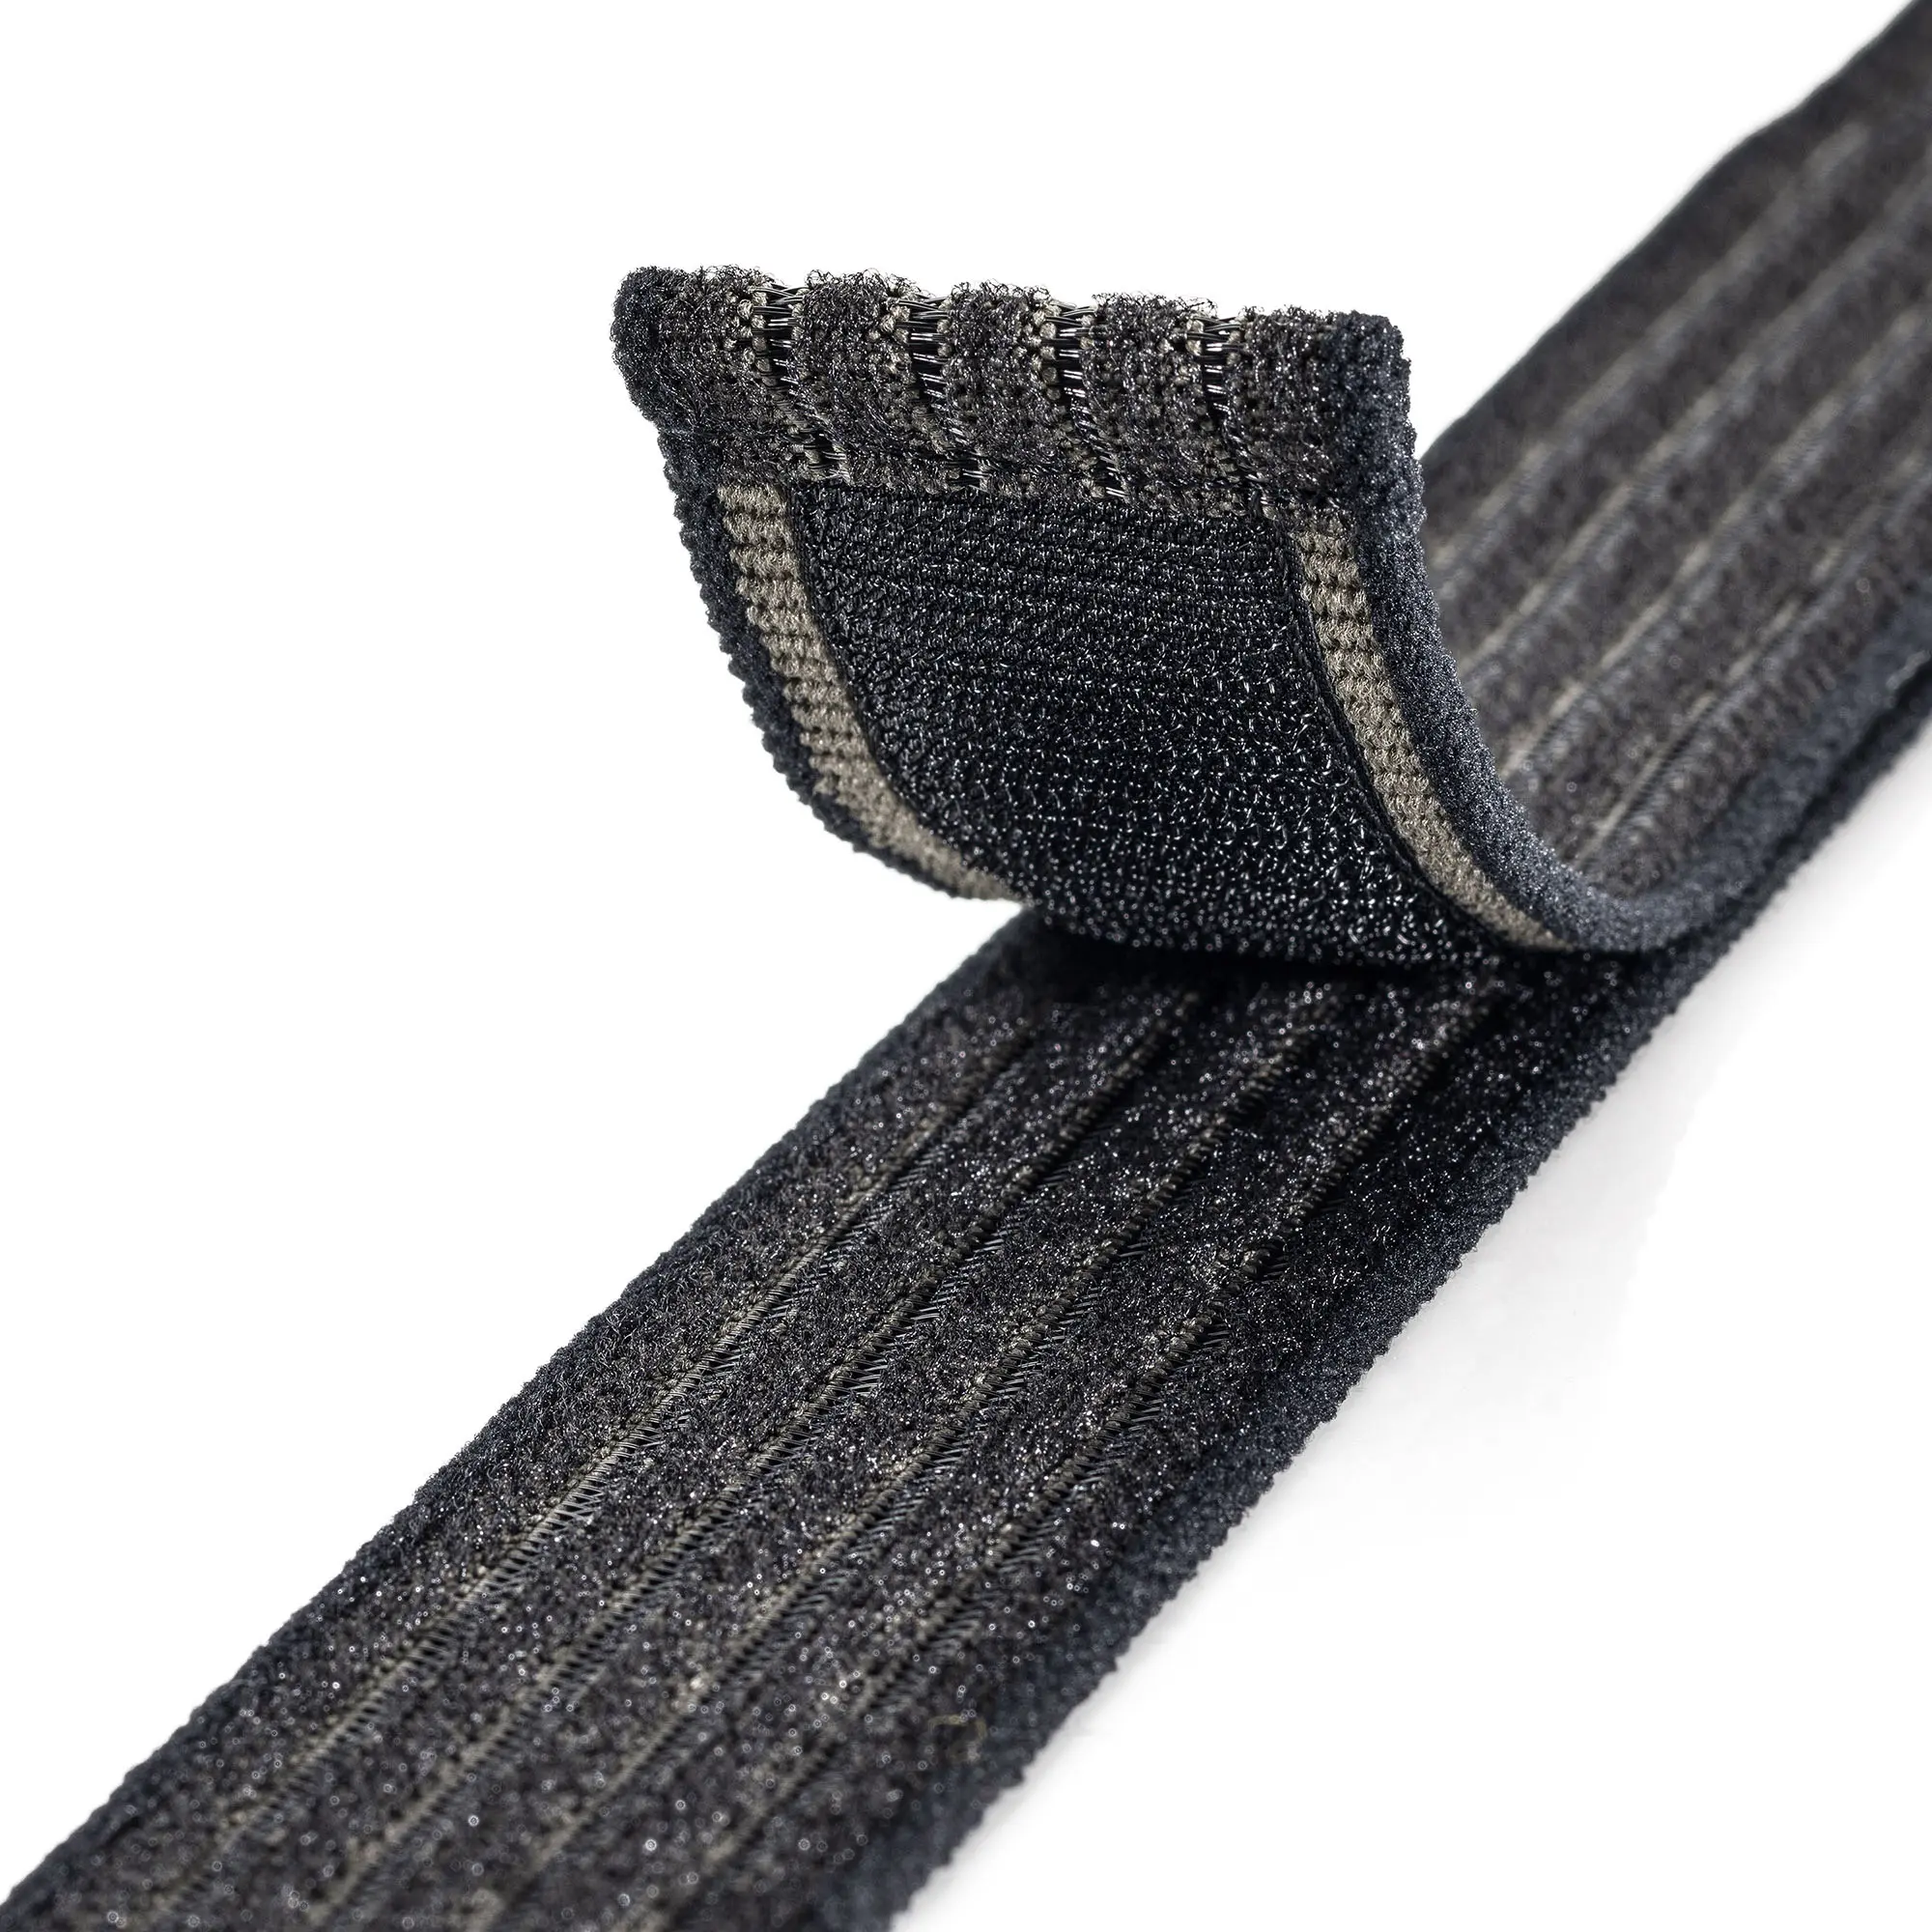 Klettfähiger Elastikgurt: Produktfoto eines schwarz- und olivfarbenen und elastischen Klettband auf weißem Hintergrund, der Teil mit dem Klett ist nach oben gebogen